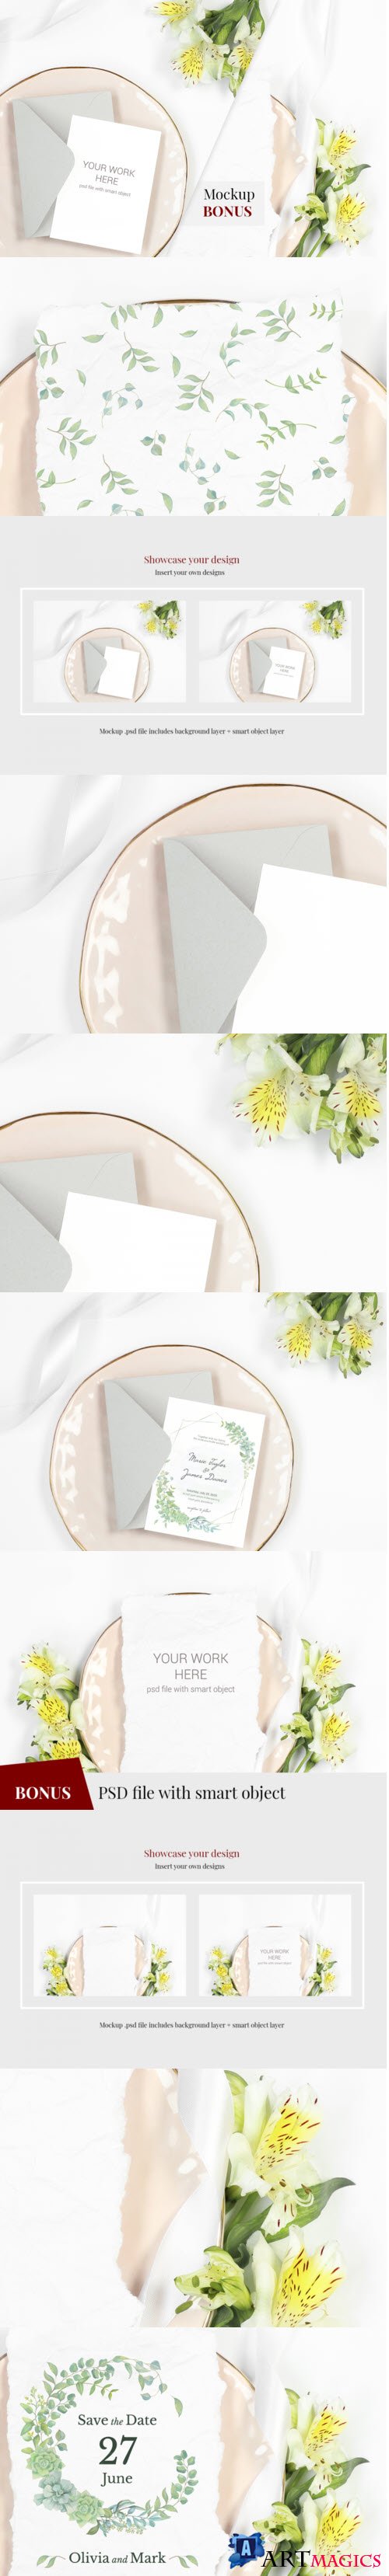 Card Mockup on plate with flowers. BONUS  - 405668 - 2217976